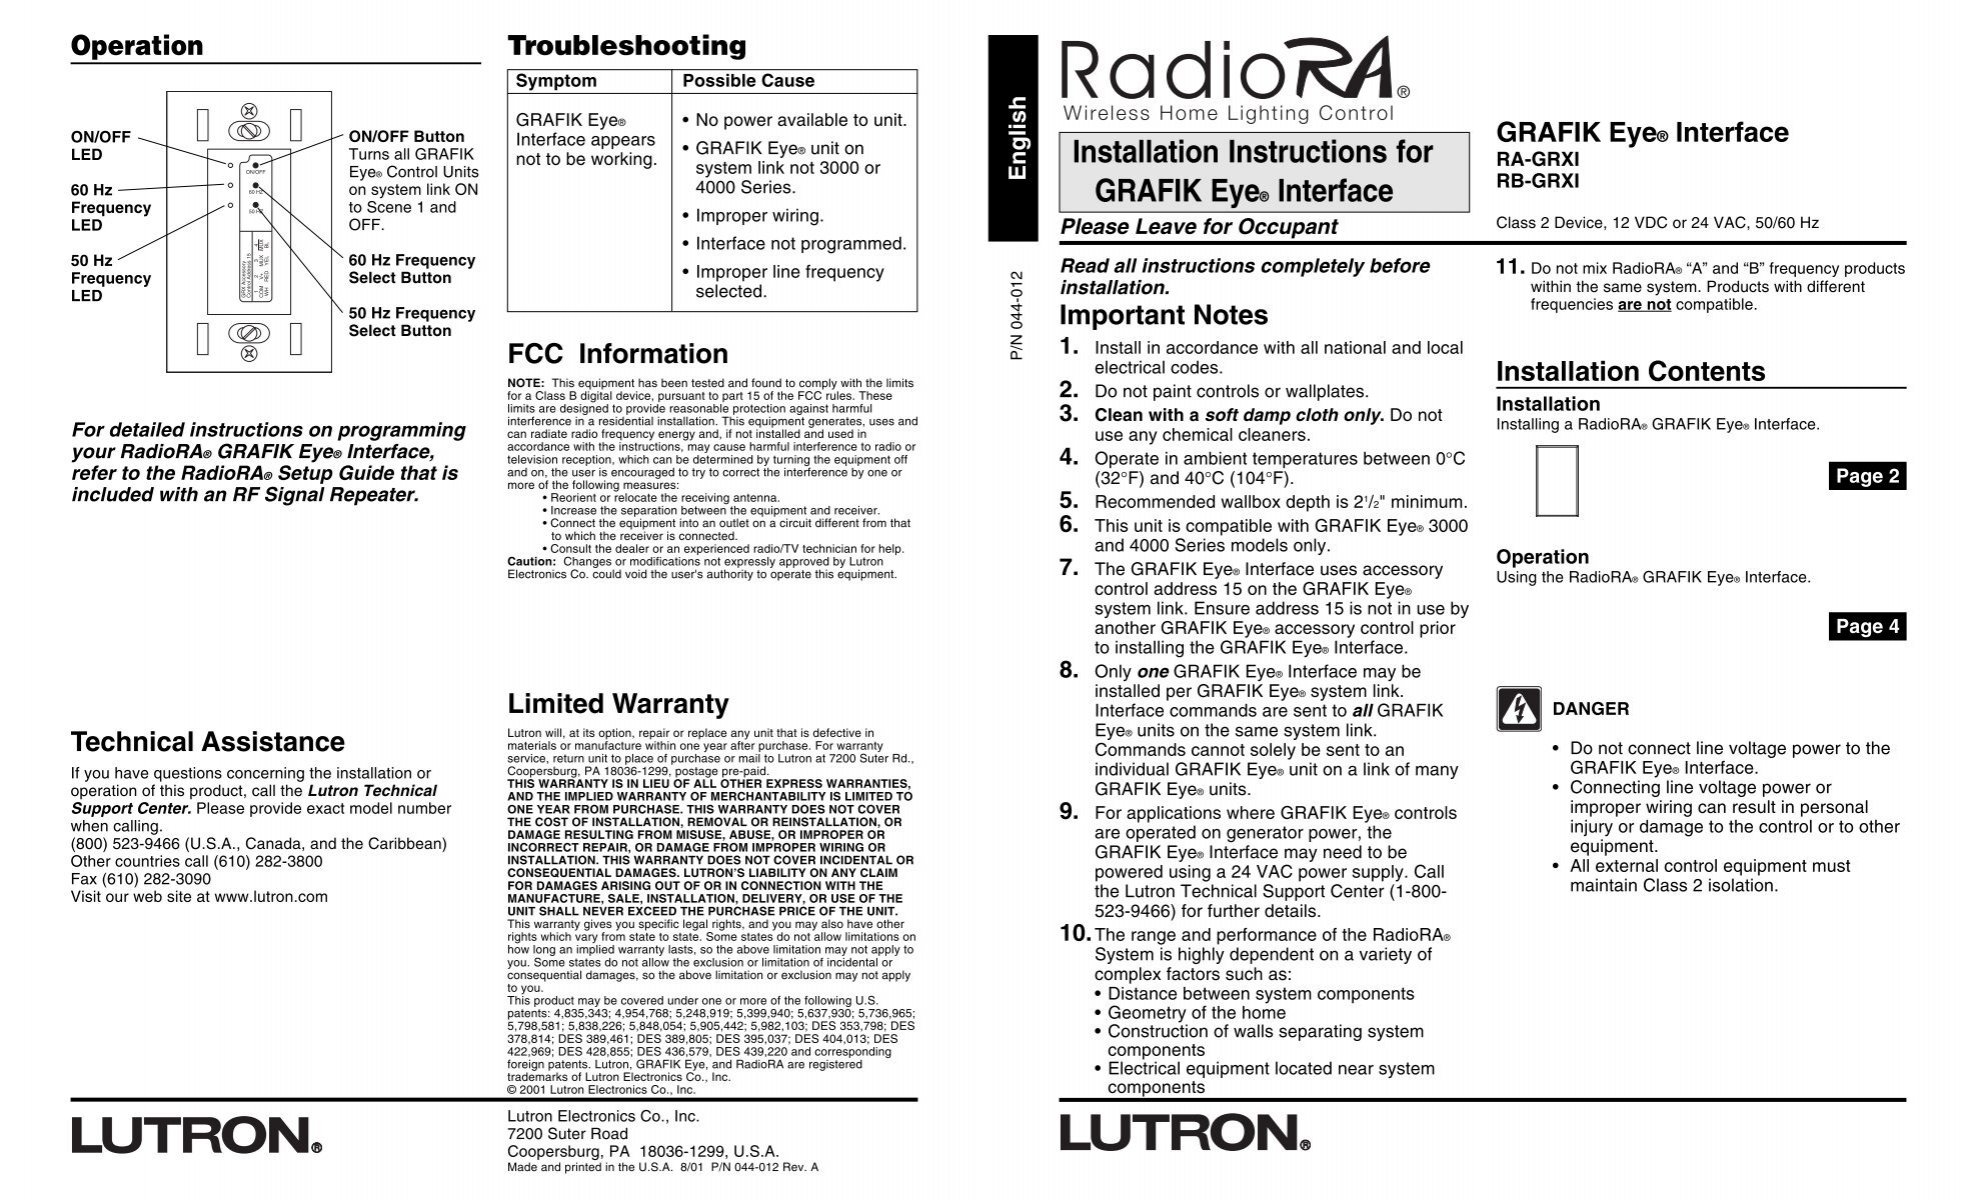 35 Lutron Grafik Eye Wiring Diagram - Free Wiring Diagram Source